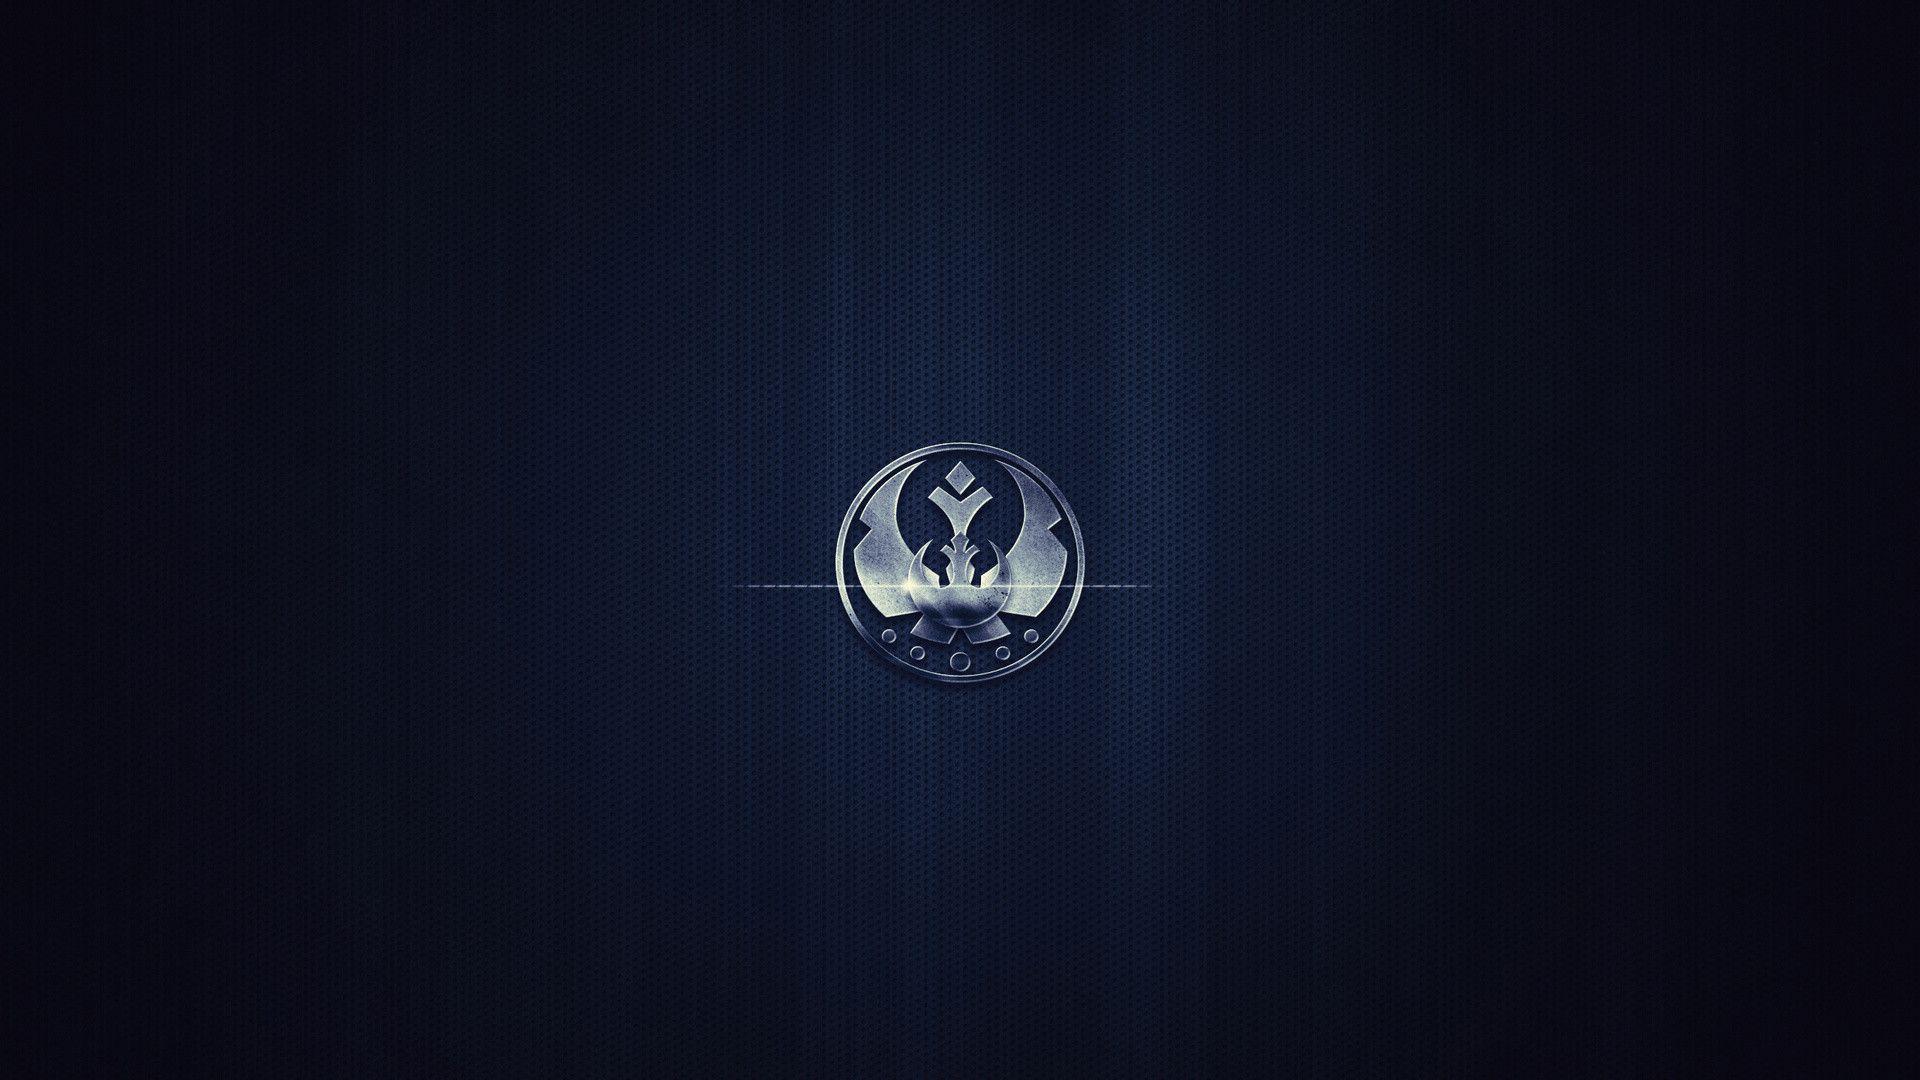 Image For > Star Wars Rebellion Logo